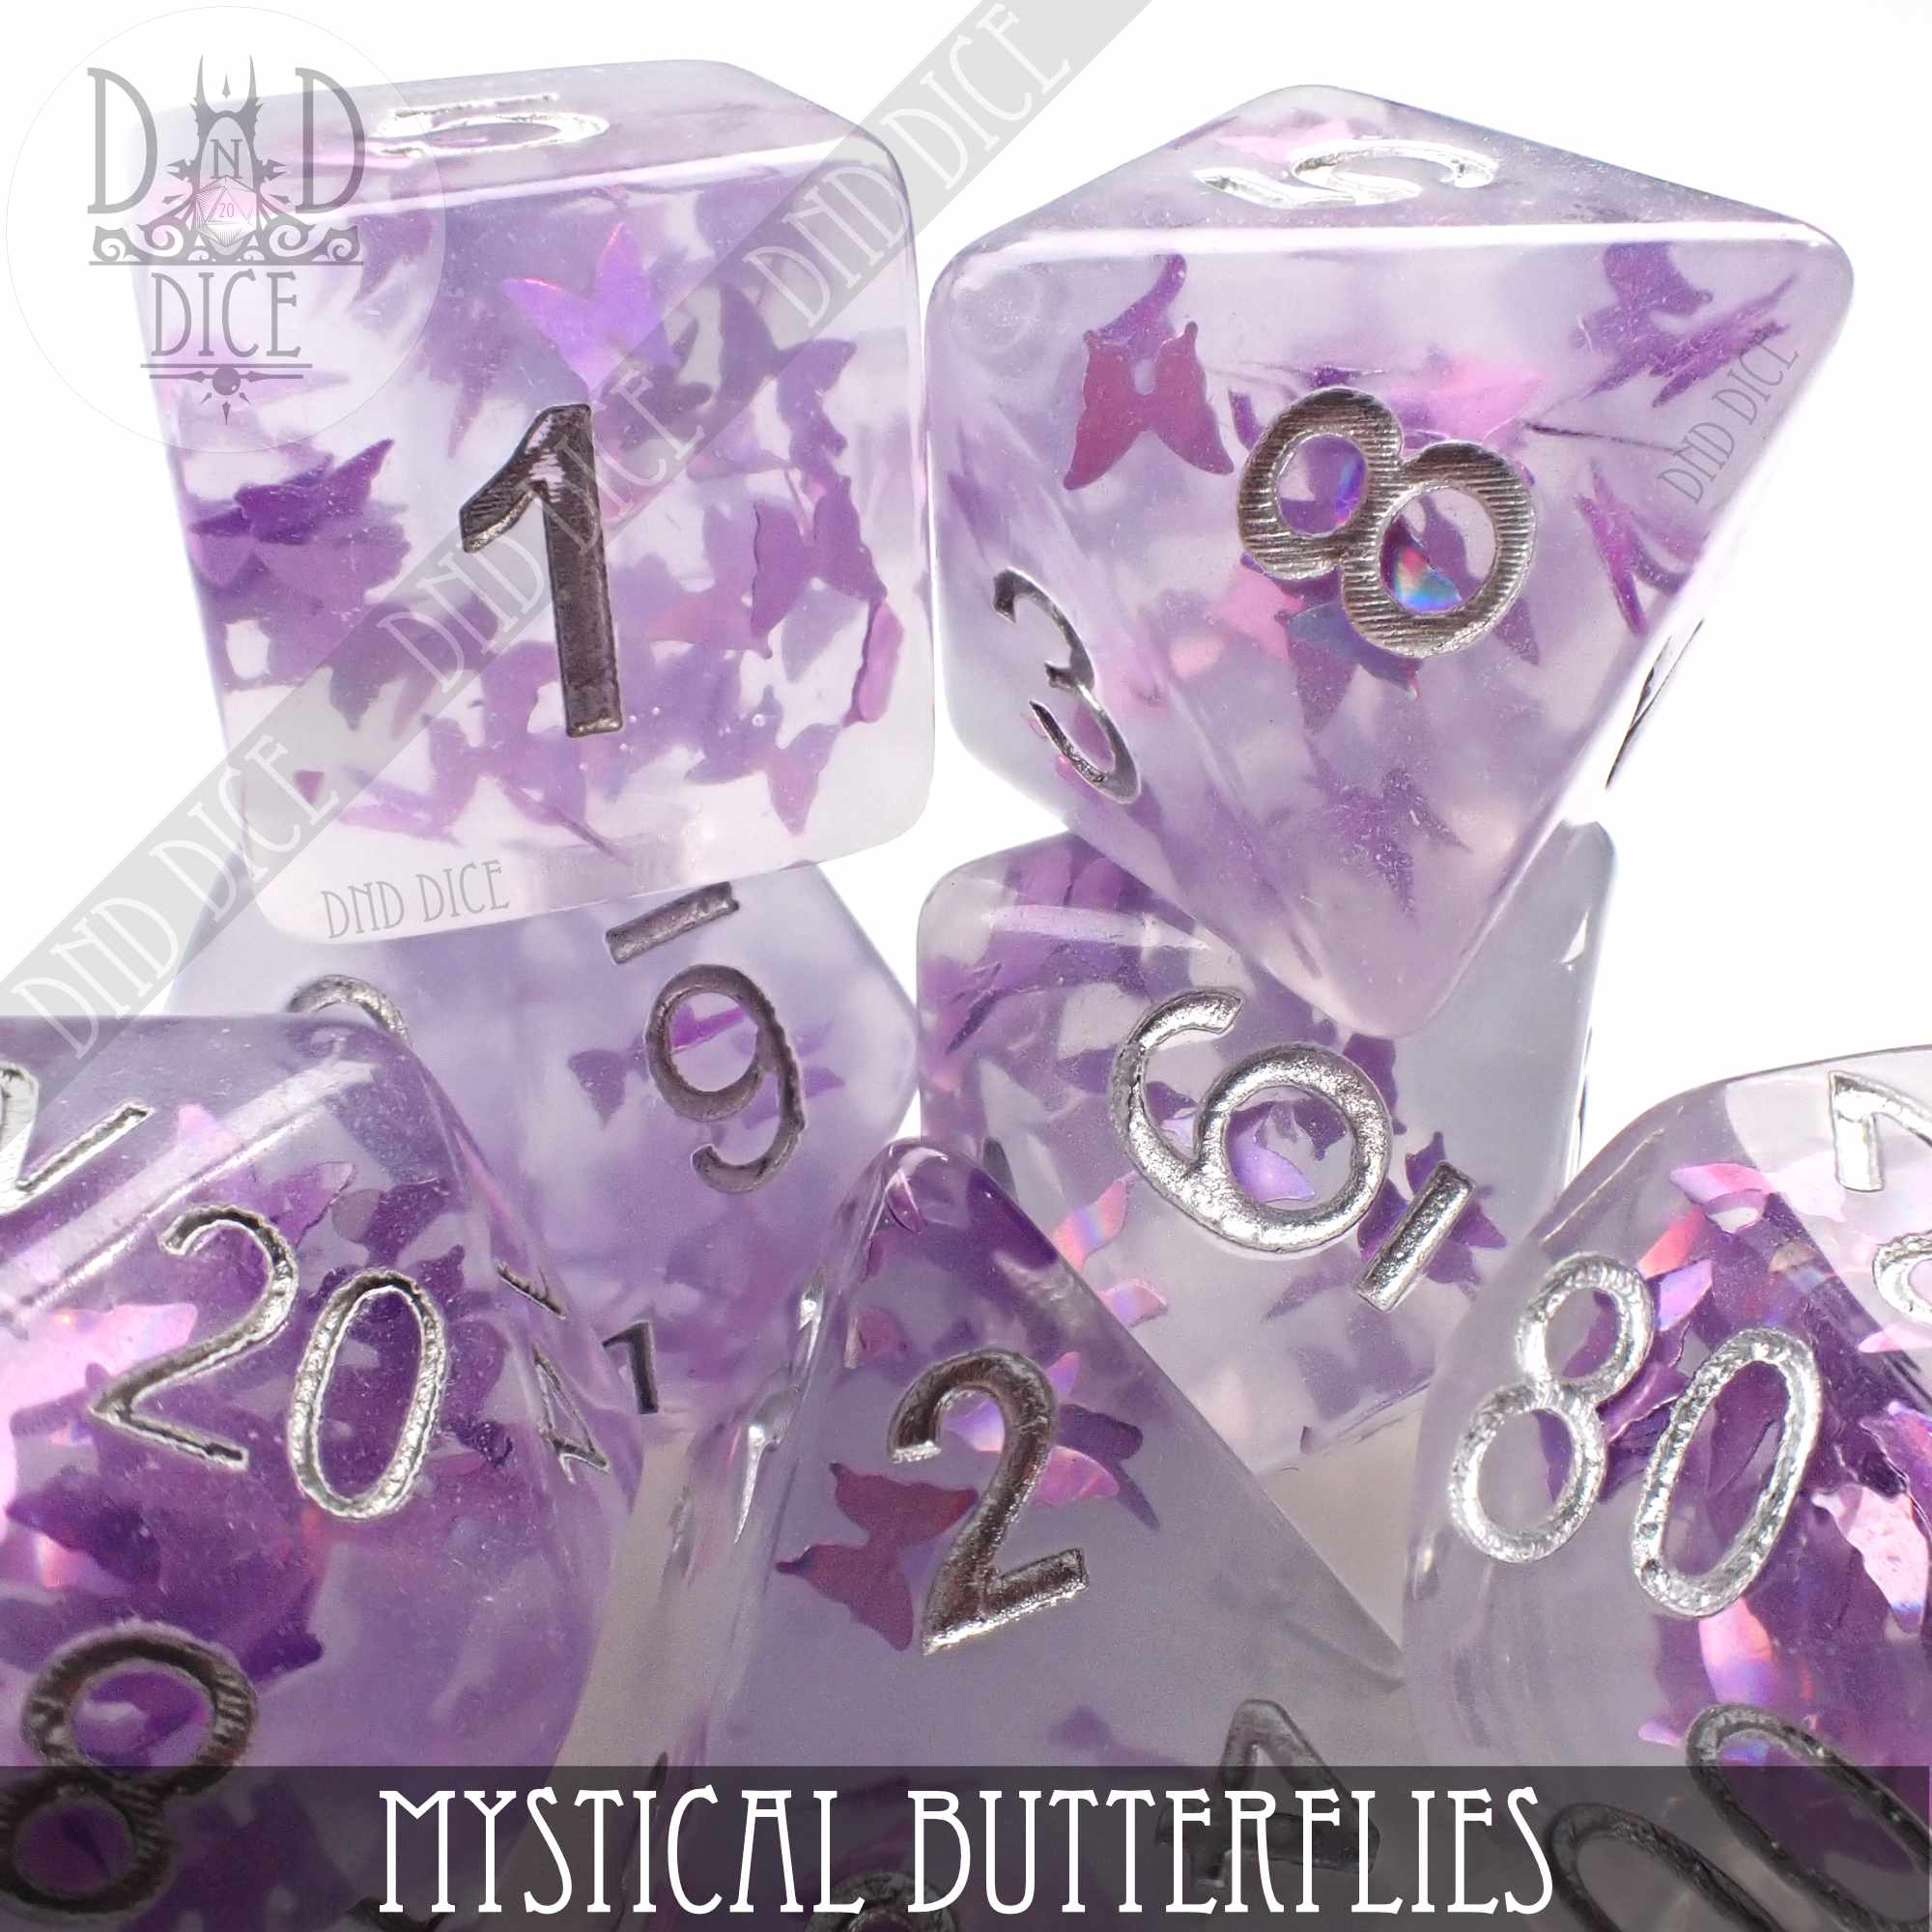 Mystical Butterflies Dice Set